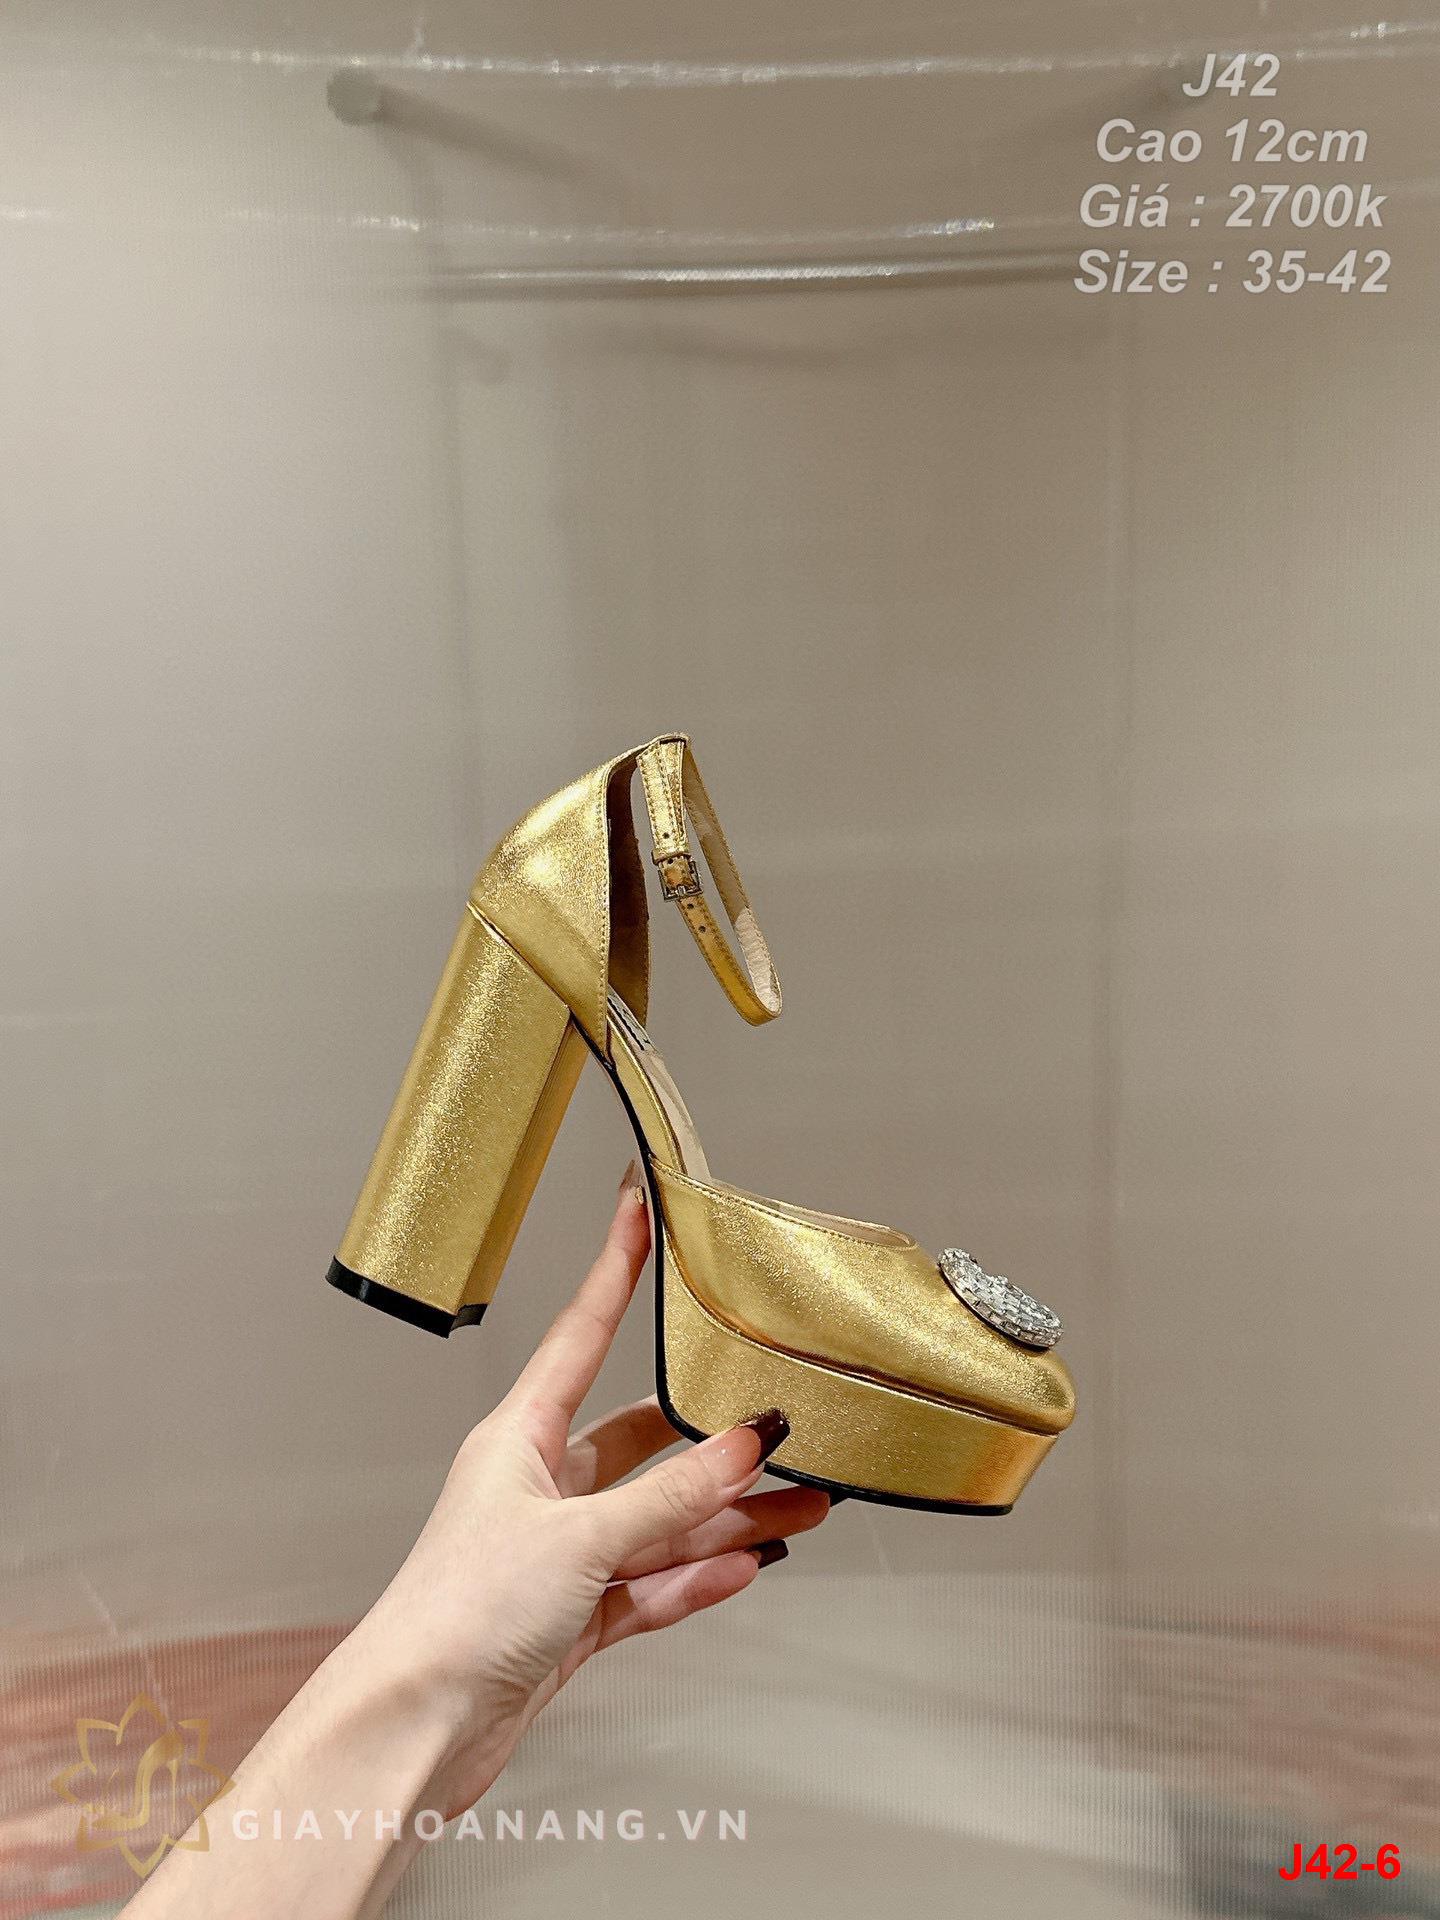 J42-6 Gucci sandal cao 12cm siêu cấp